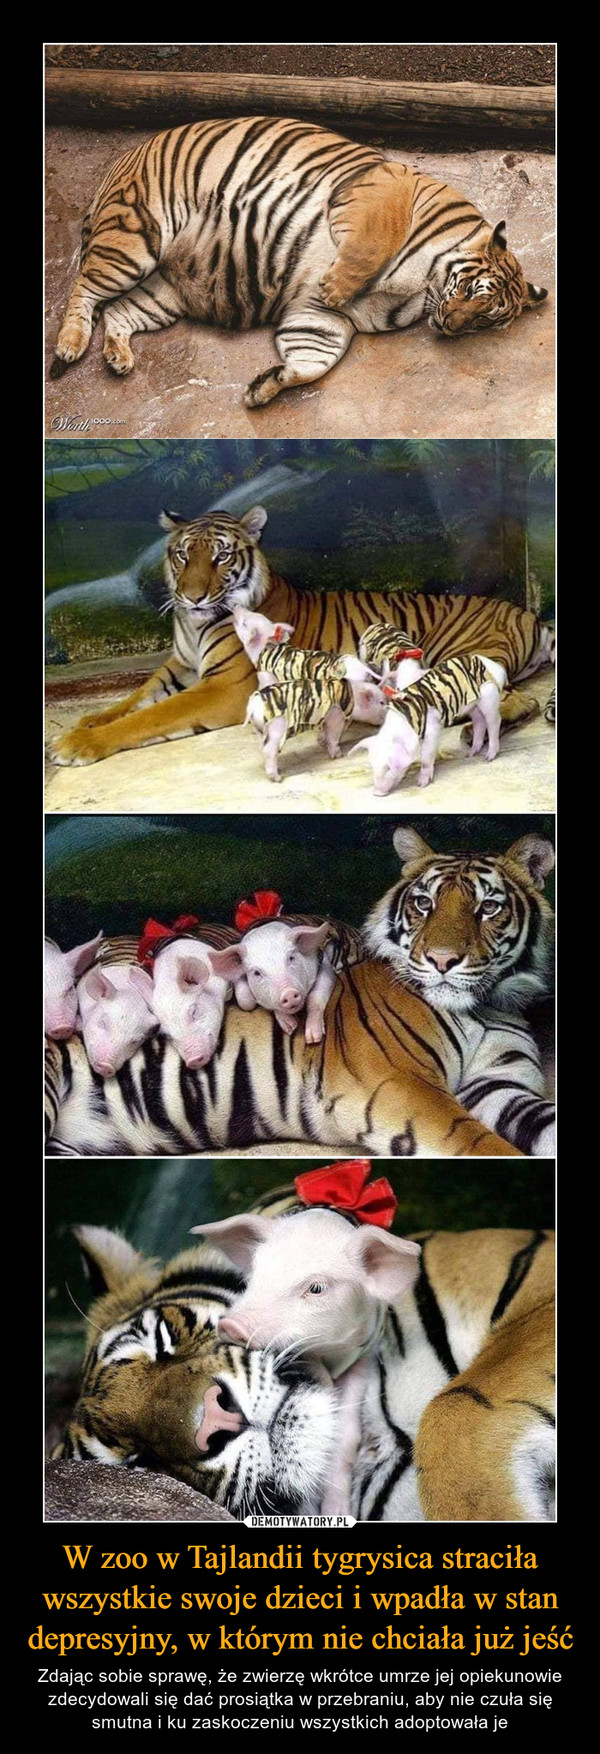 W zoo w Tajlandii tygrysica straciła wszystkie swoje dzieci i wpadła w stan depresyjny, w którym nie chciała już jeść